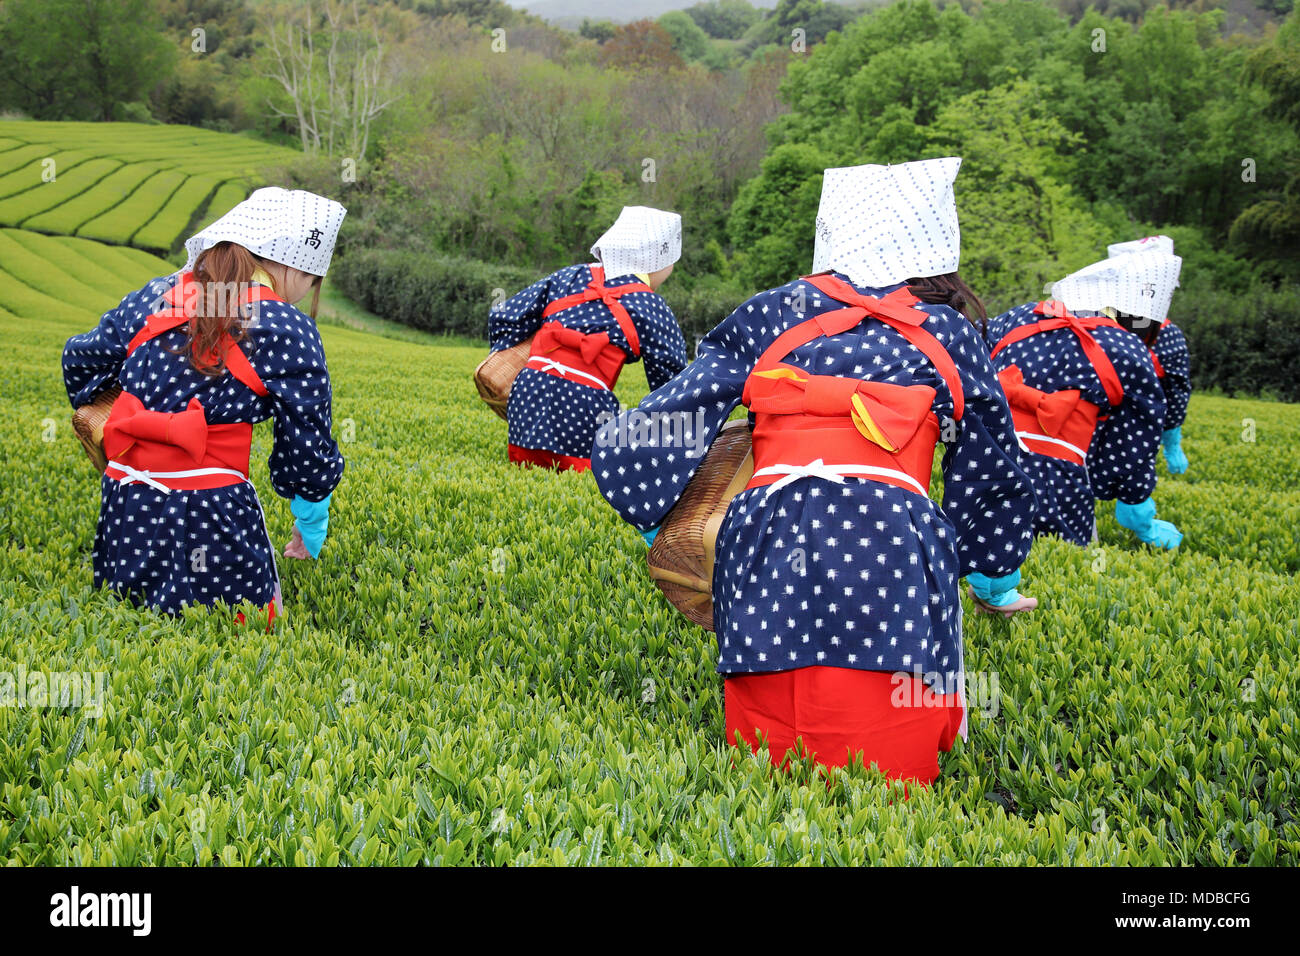 KAGAWA, Japan - 17. APRIL 2018: Junge japanische Frauen mit traditioneller Kleidung kimono Ernte grüne Teeblätter auf landwirtschaftlich genutzten Flächen. Stockfoto